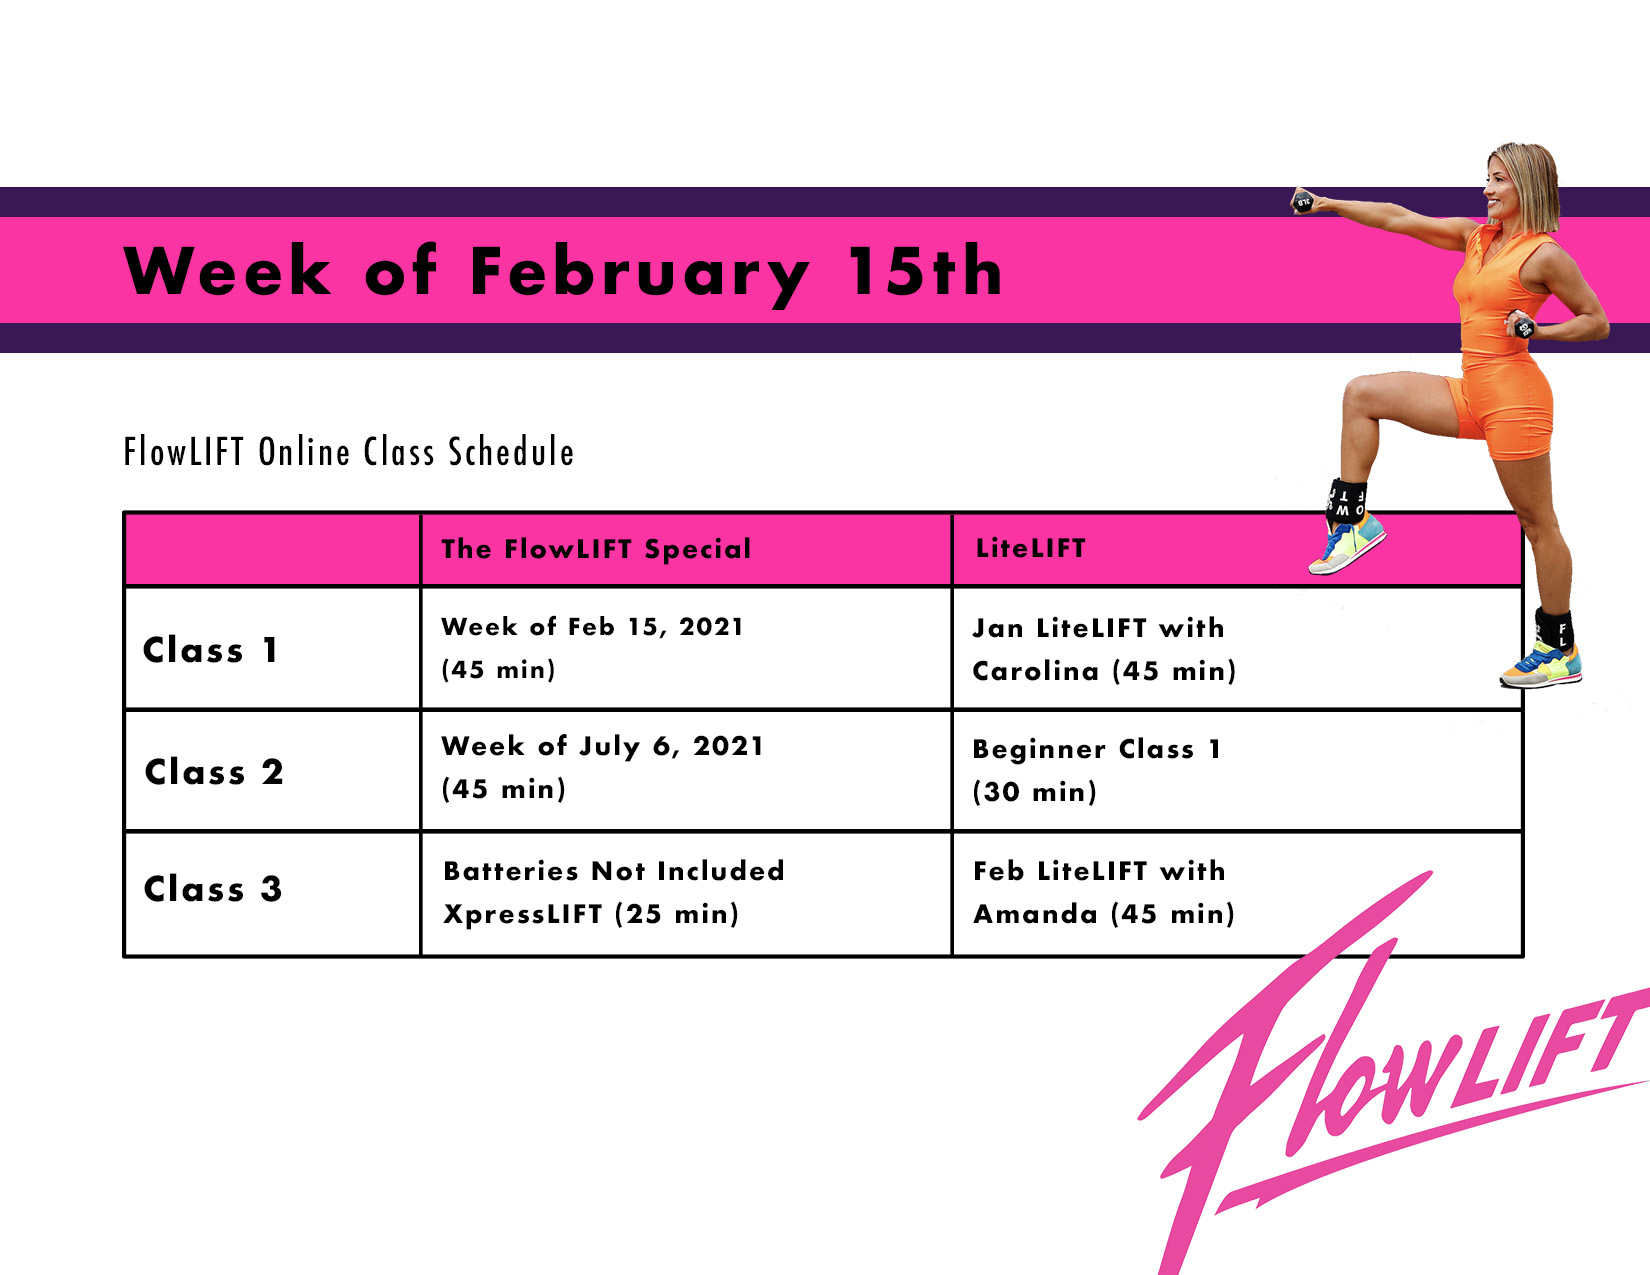 FlowLift weekly schedule